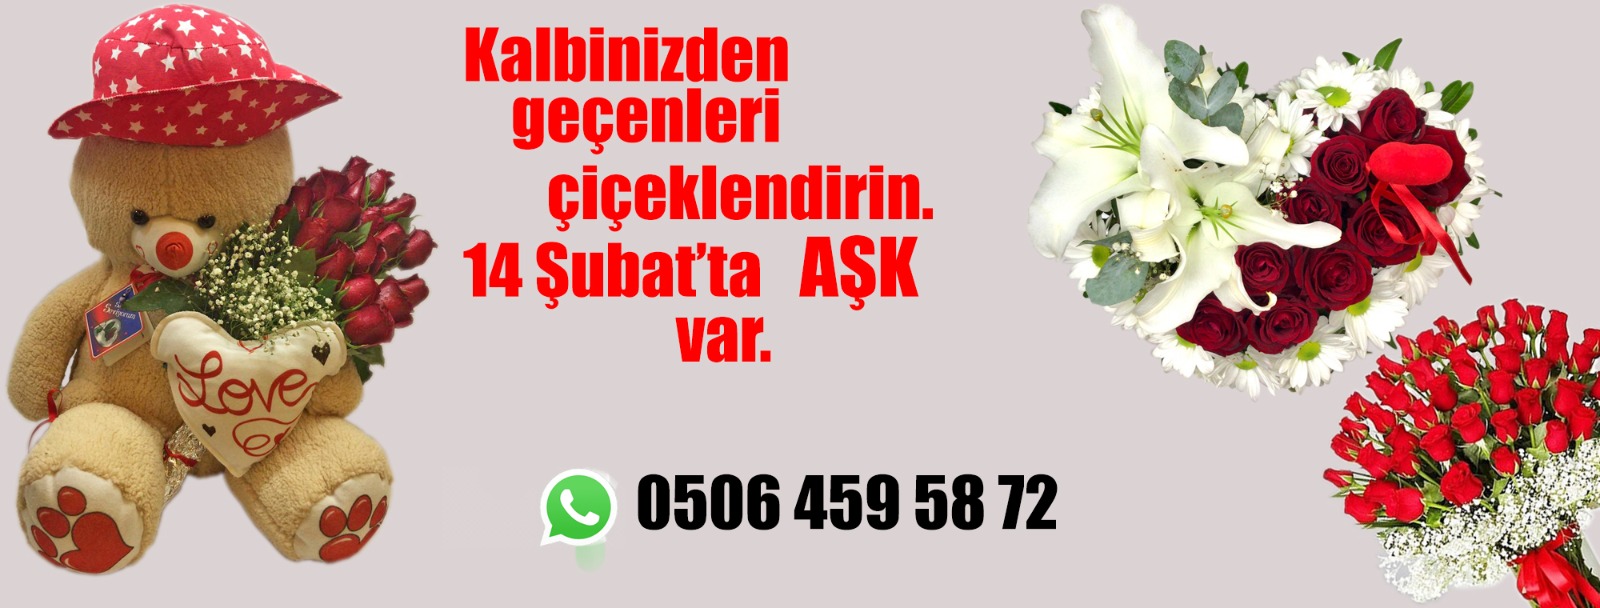 Antalya Çiçek 7/24 Çiçek Teslimatı-75 TL'den başlayan fiyatlarla- 60 Dk Teslimat